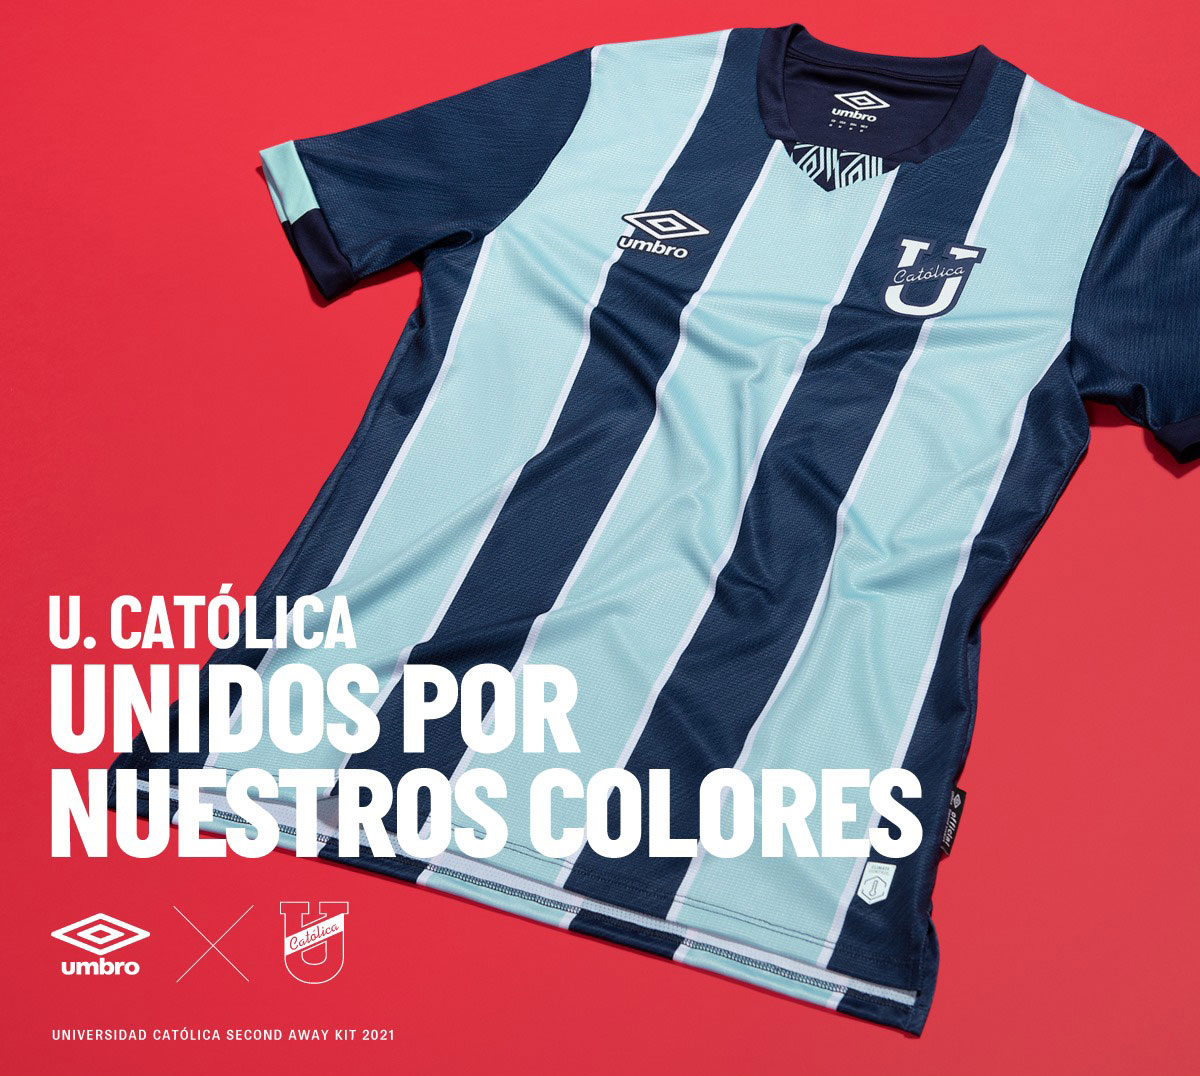 Camisetas Umbro de Universidad Católica de Ecuador 2021